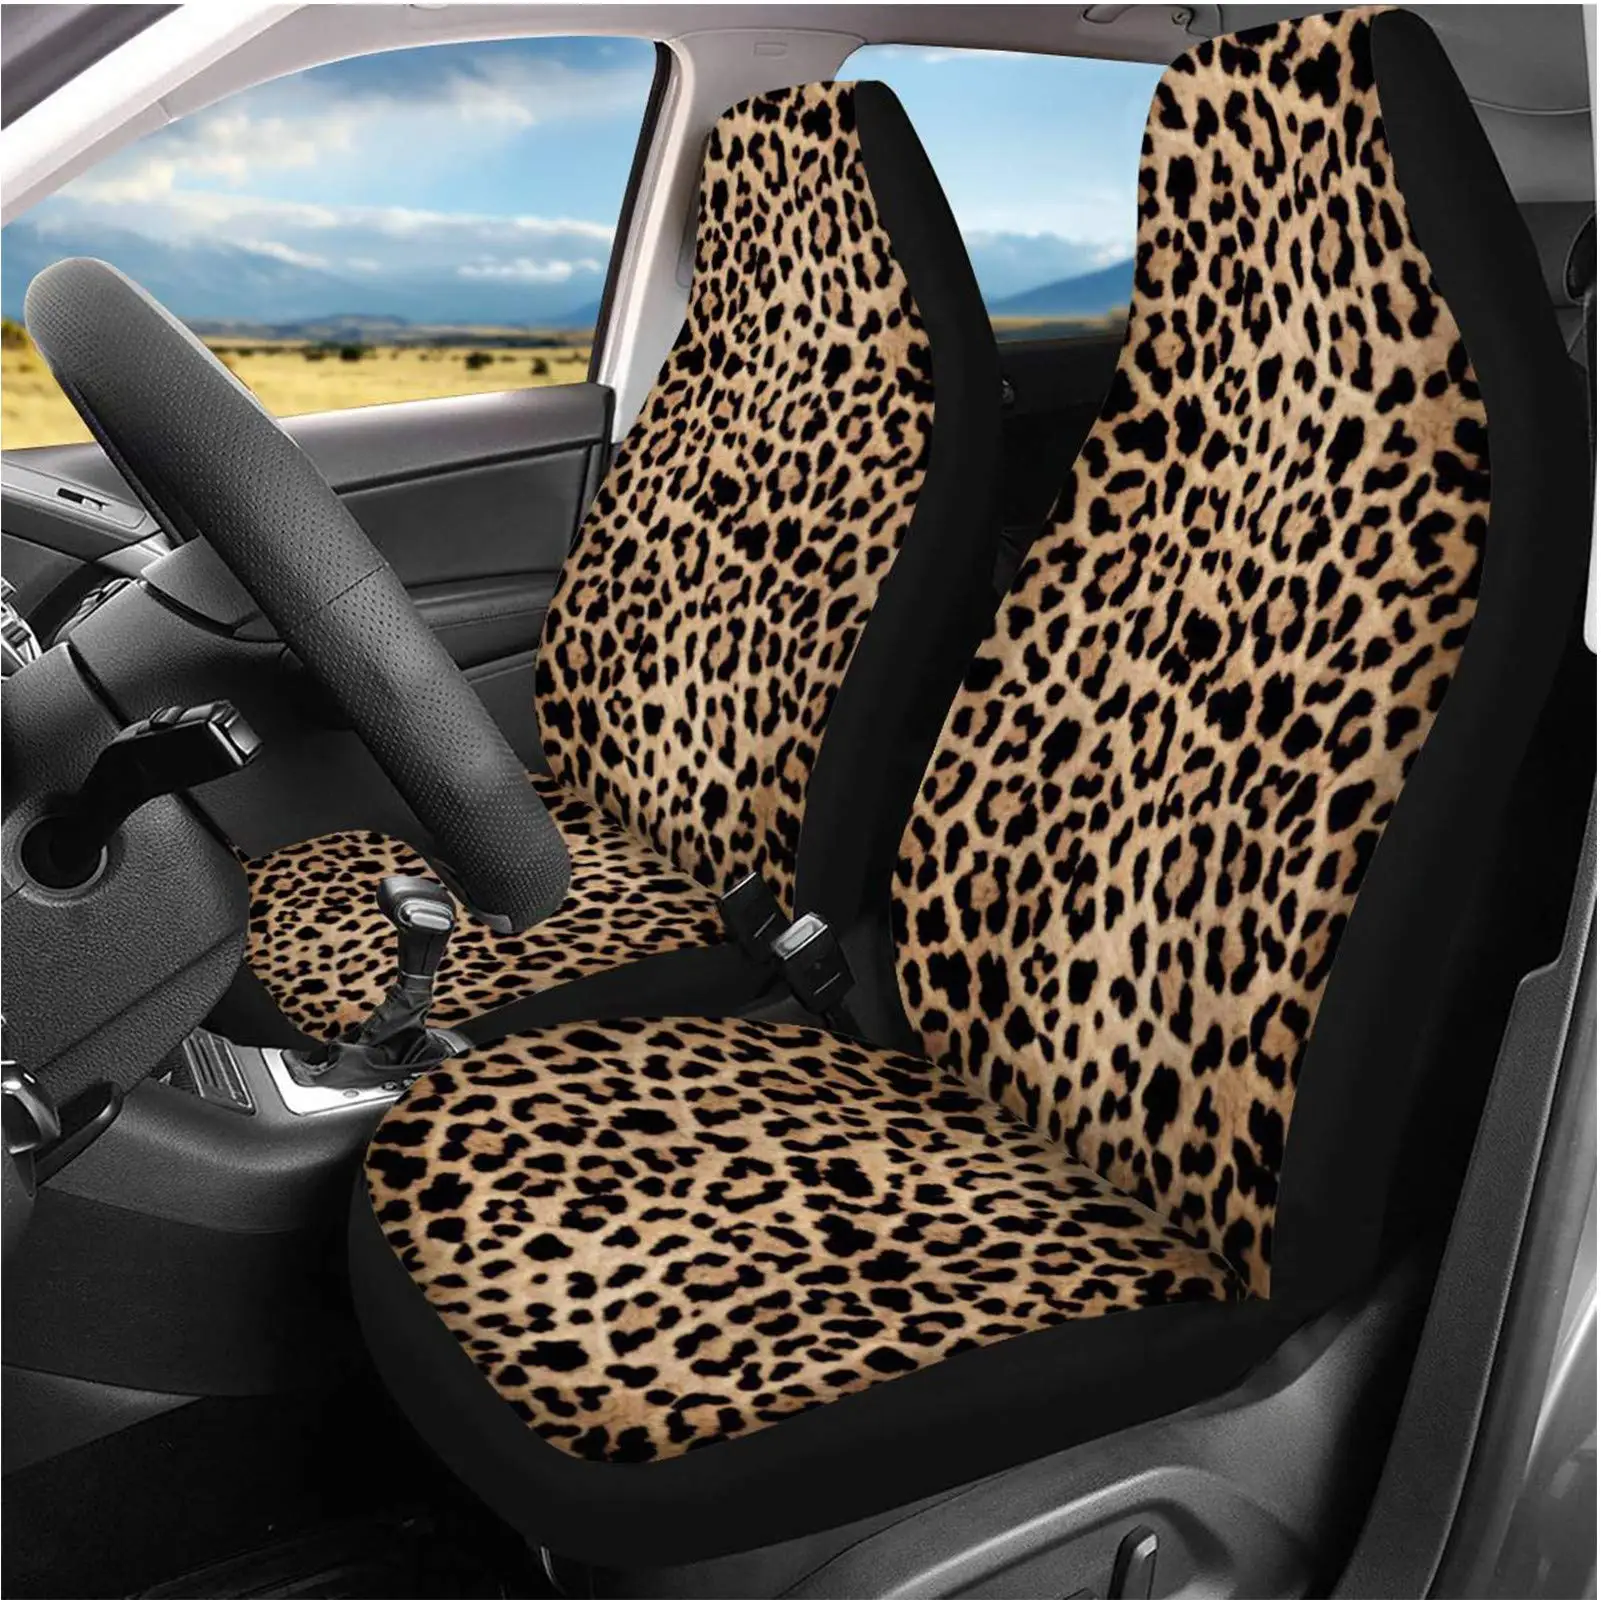 Комплект автомобильных чехлов для передних сидений с леопардовым принтом животных, протектор автомобильных сидений с рисунком гепарда, автомобильные чехлы для автомобилей Седан внедорожник